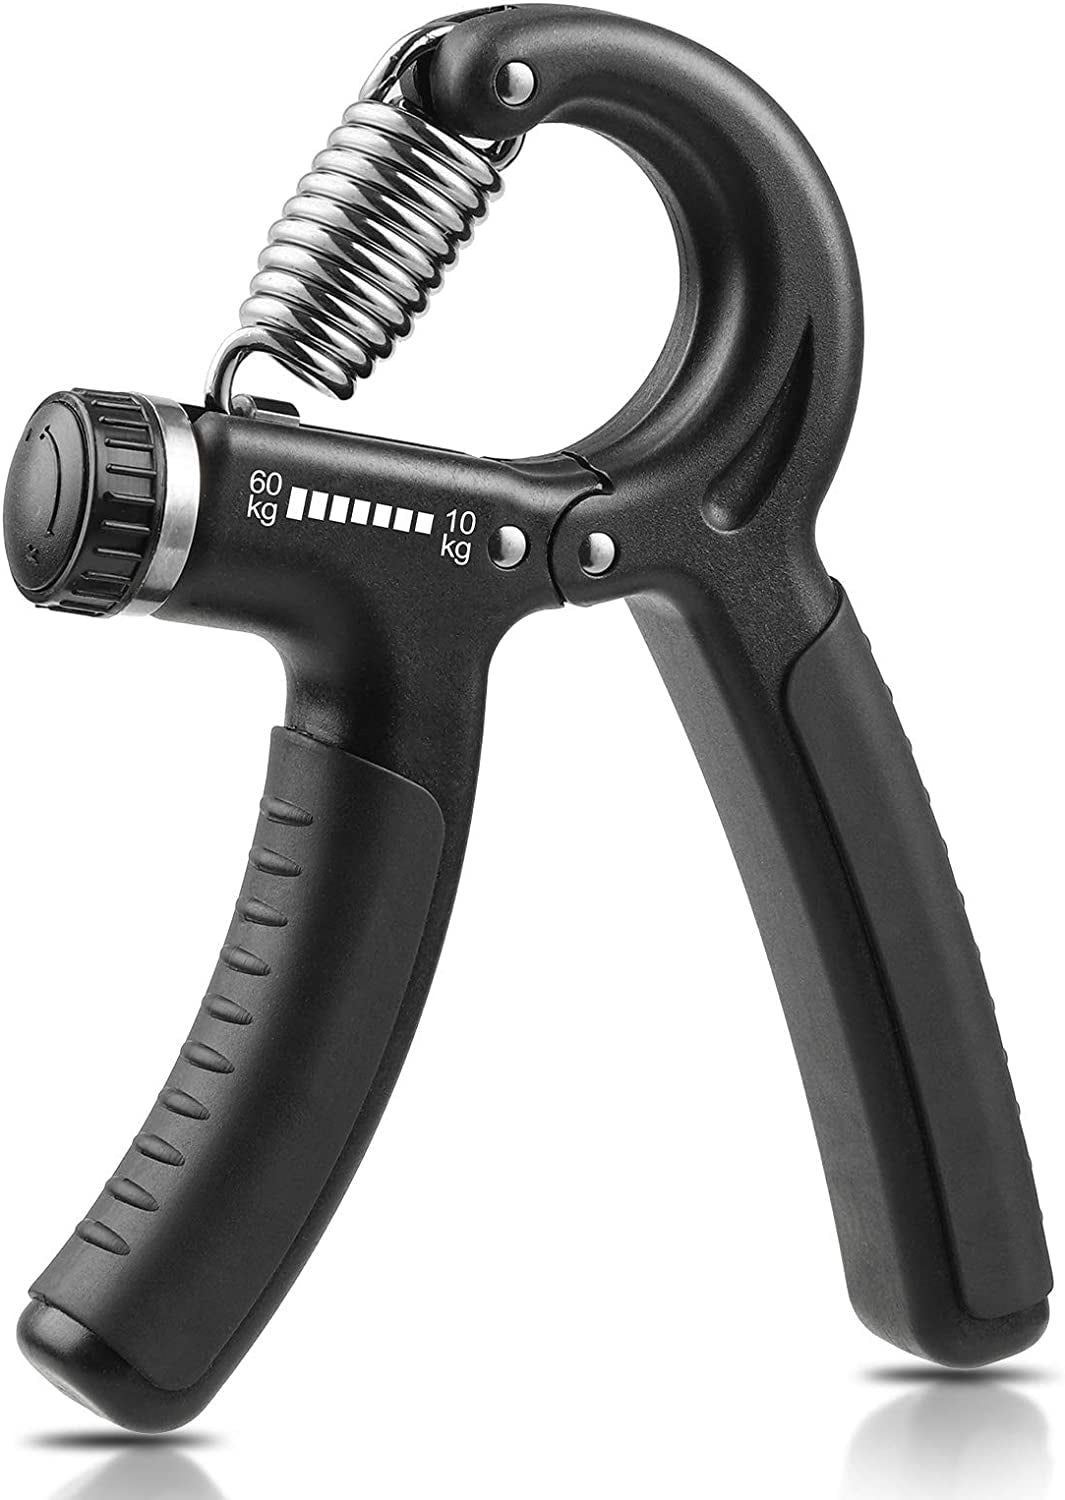 FlexiGrip Pro Adjustable Hand Grip Strengthener